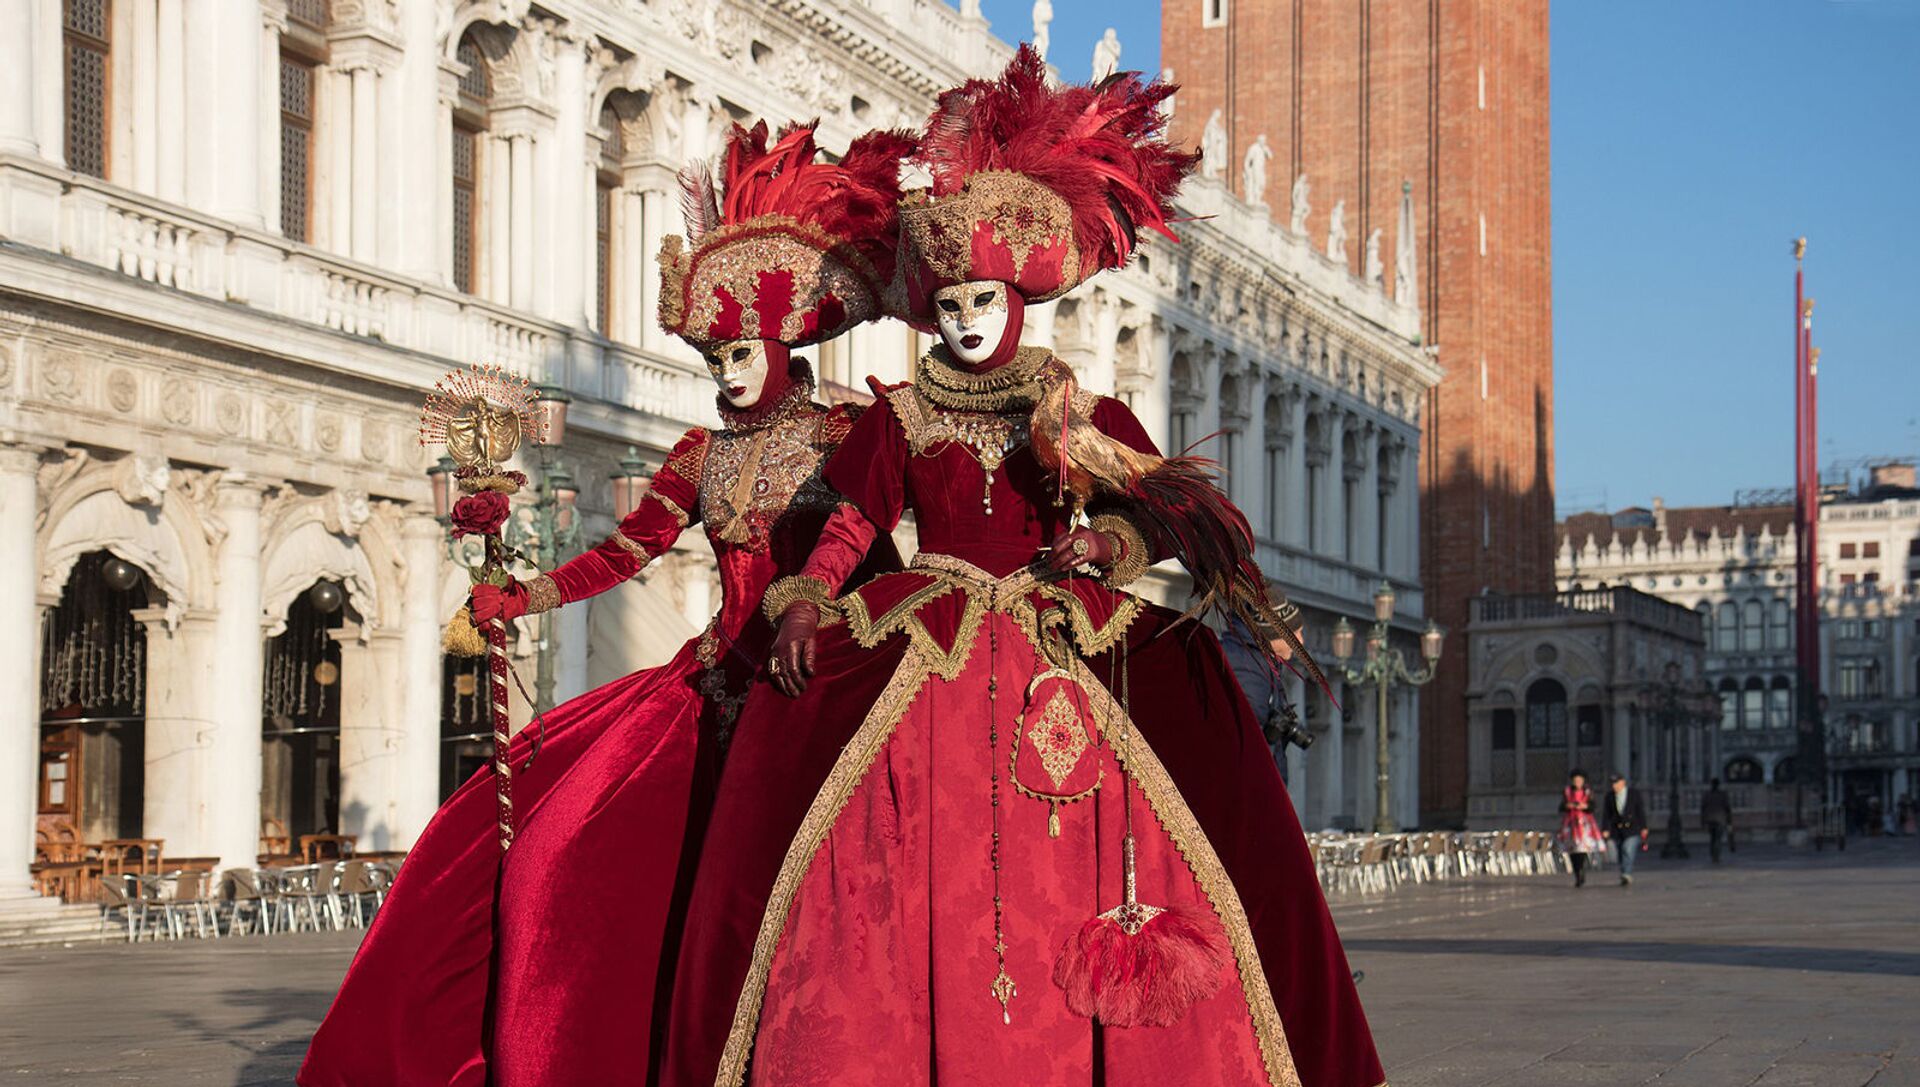  Участники венецианского карнавала в костюмах и масках - Sputnik Армения, 1920, 15.05.2021